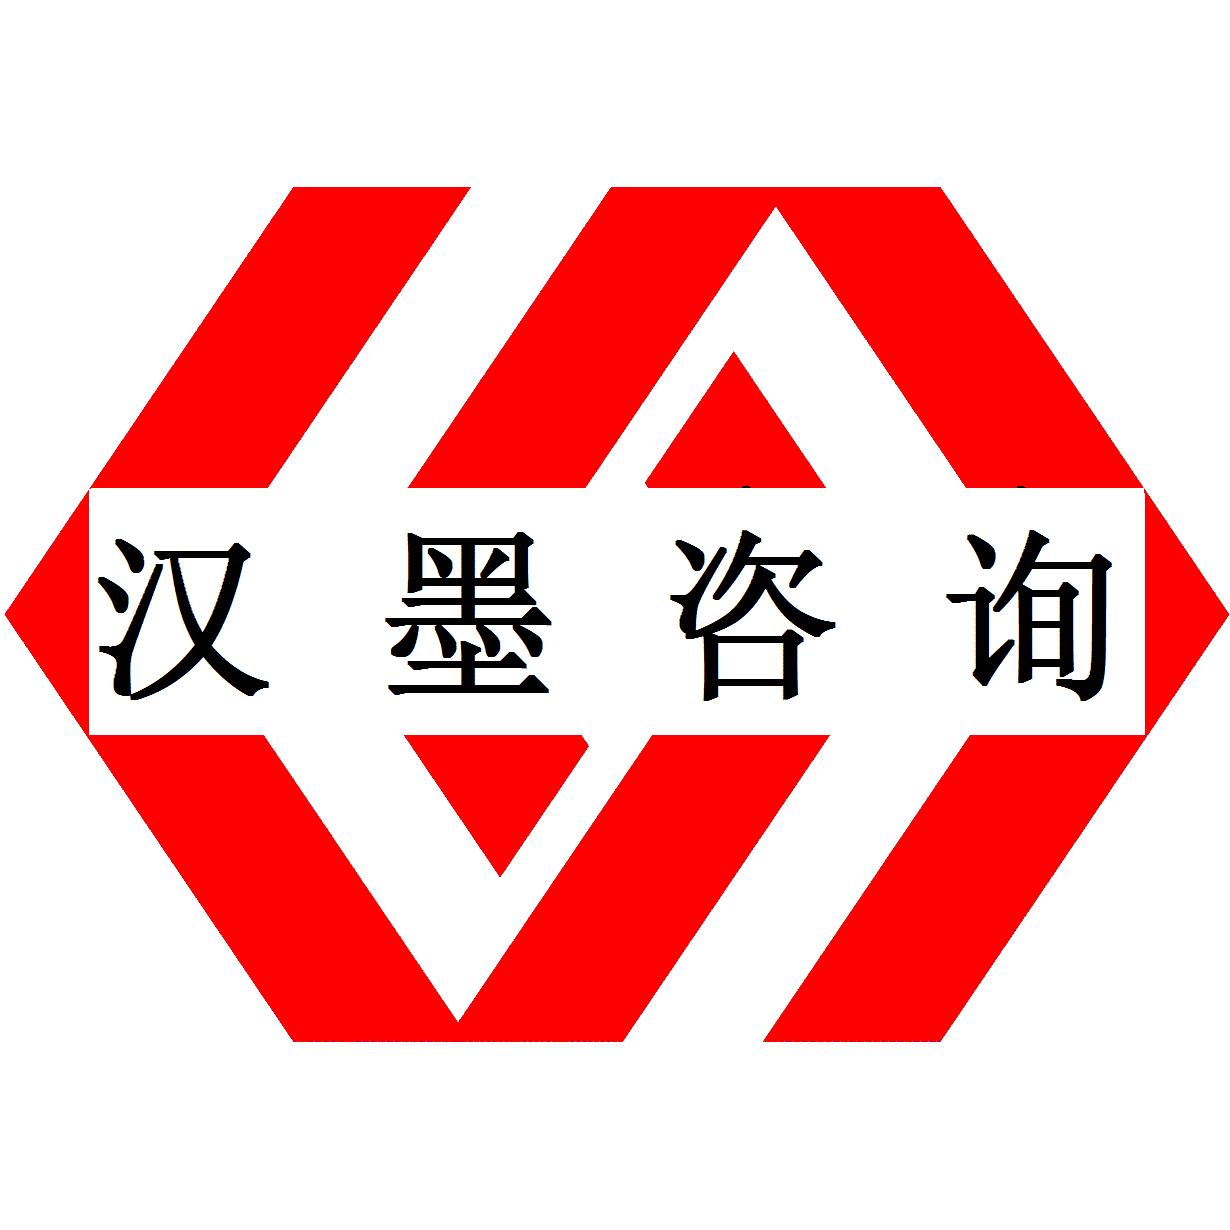 食品安全管理體系認證 廣州ISO22000認證培訓 材料準備 方便**